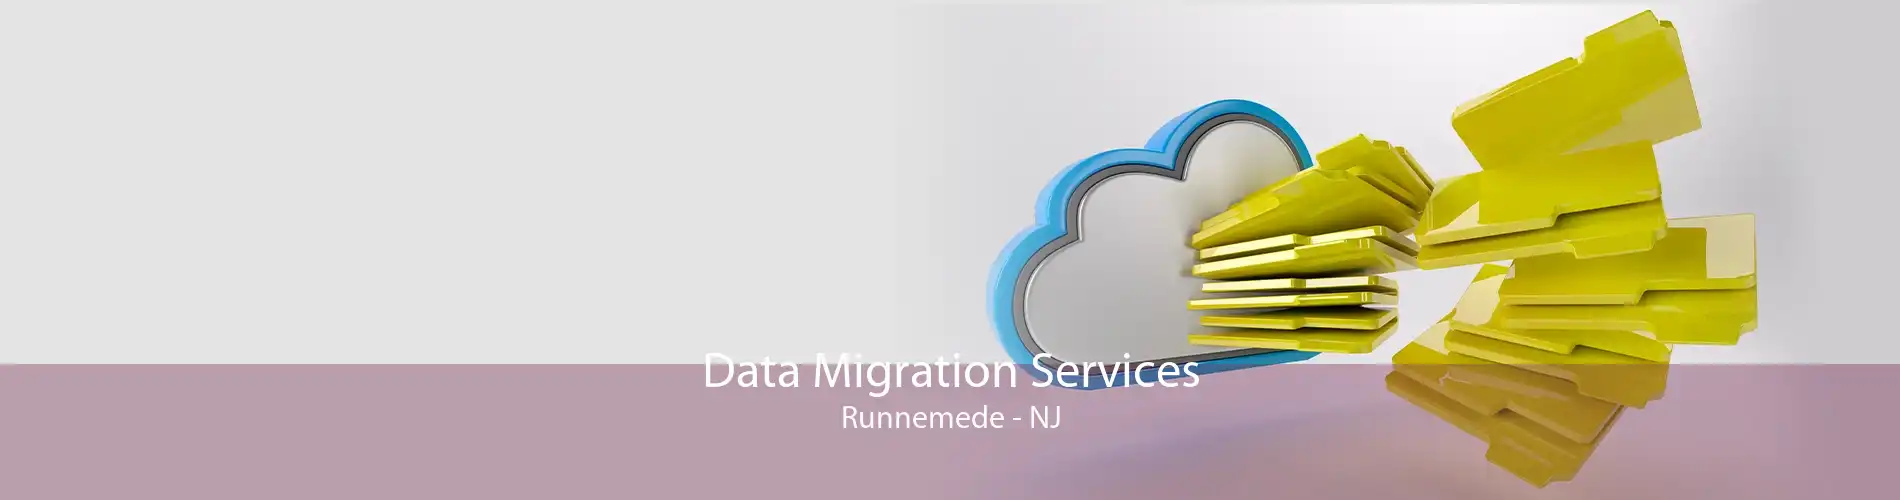 Data Migration Services Runnemede - NJ